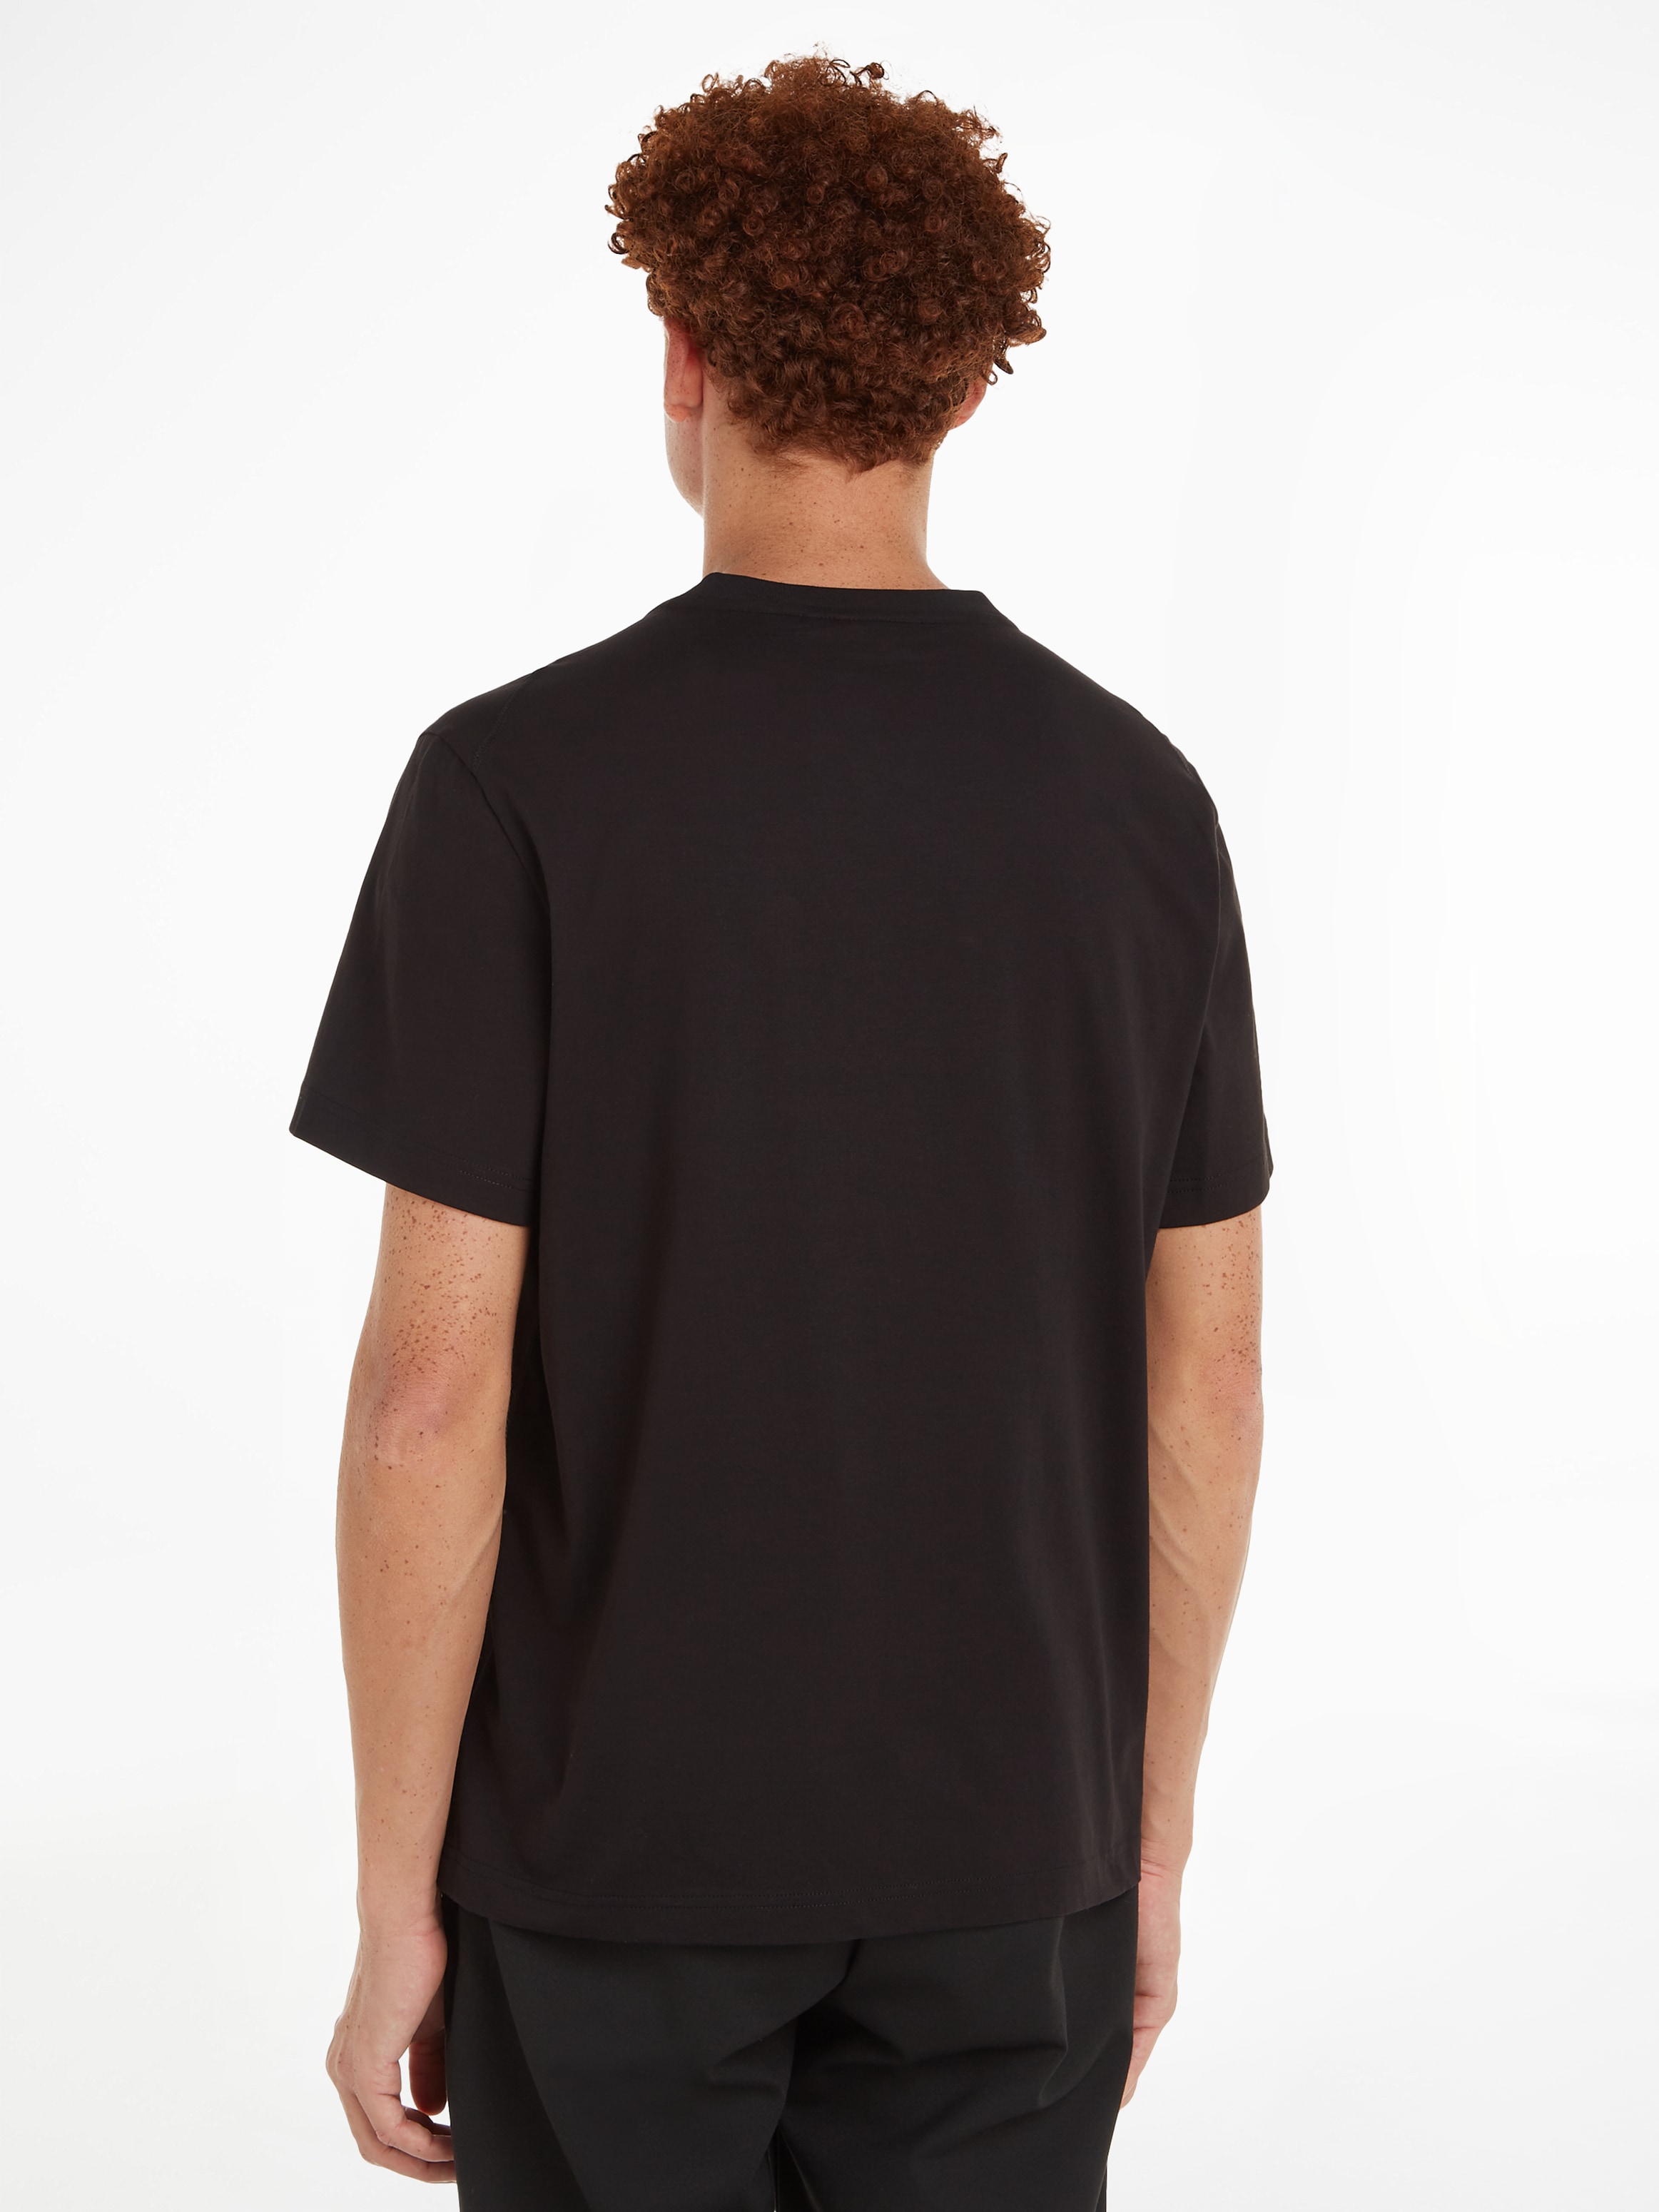 Calvin Klein T-Shirt »PHOTO PRINT T-SHIRT«